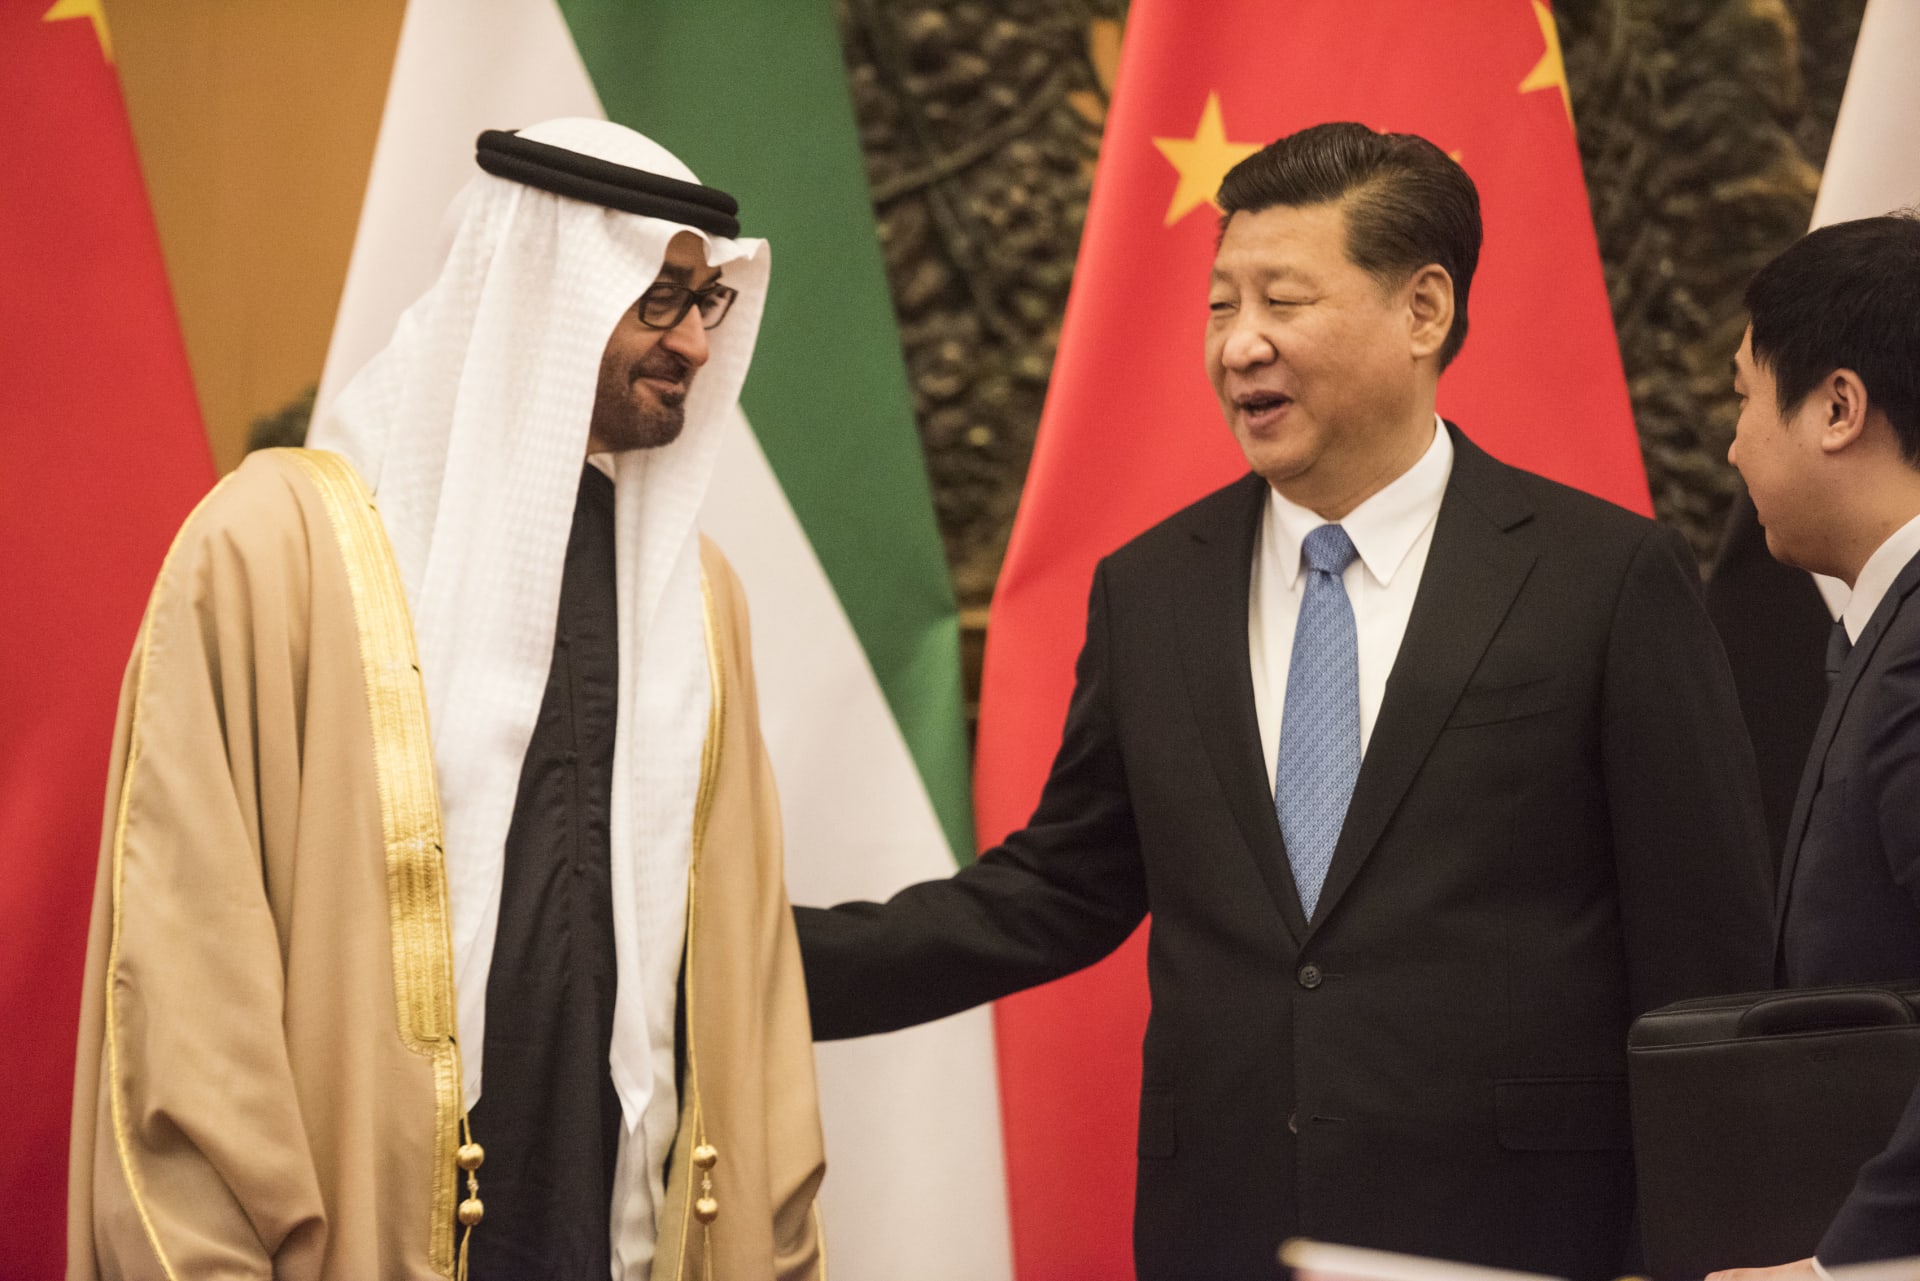 الإمارات تدعم مبدأ "الصين الواحدة" وتؤكد: قلقون من "الزيارات الاستفزازية"